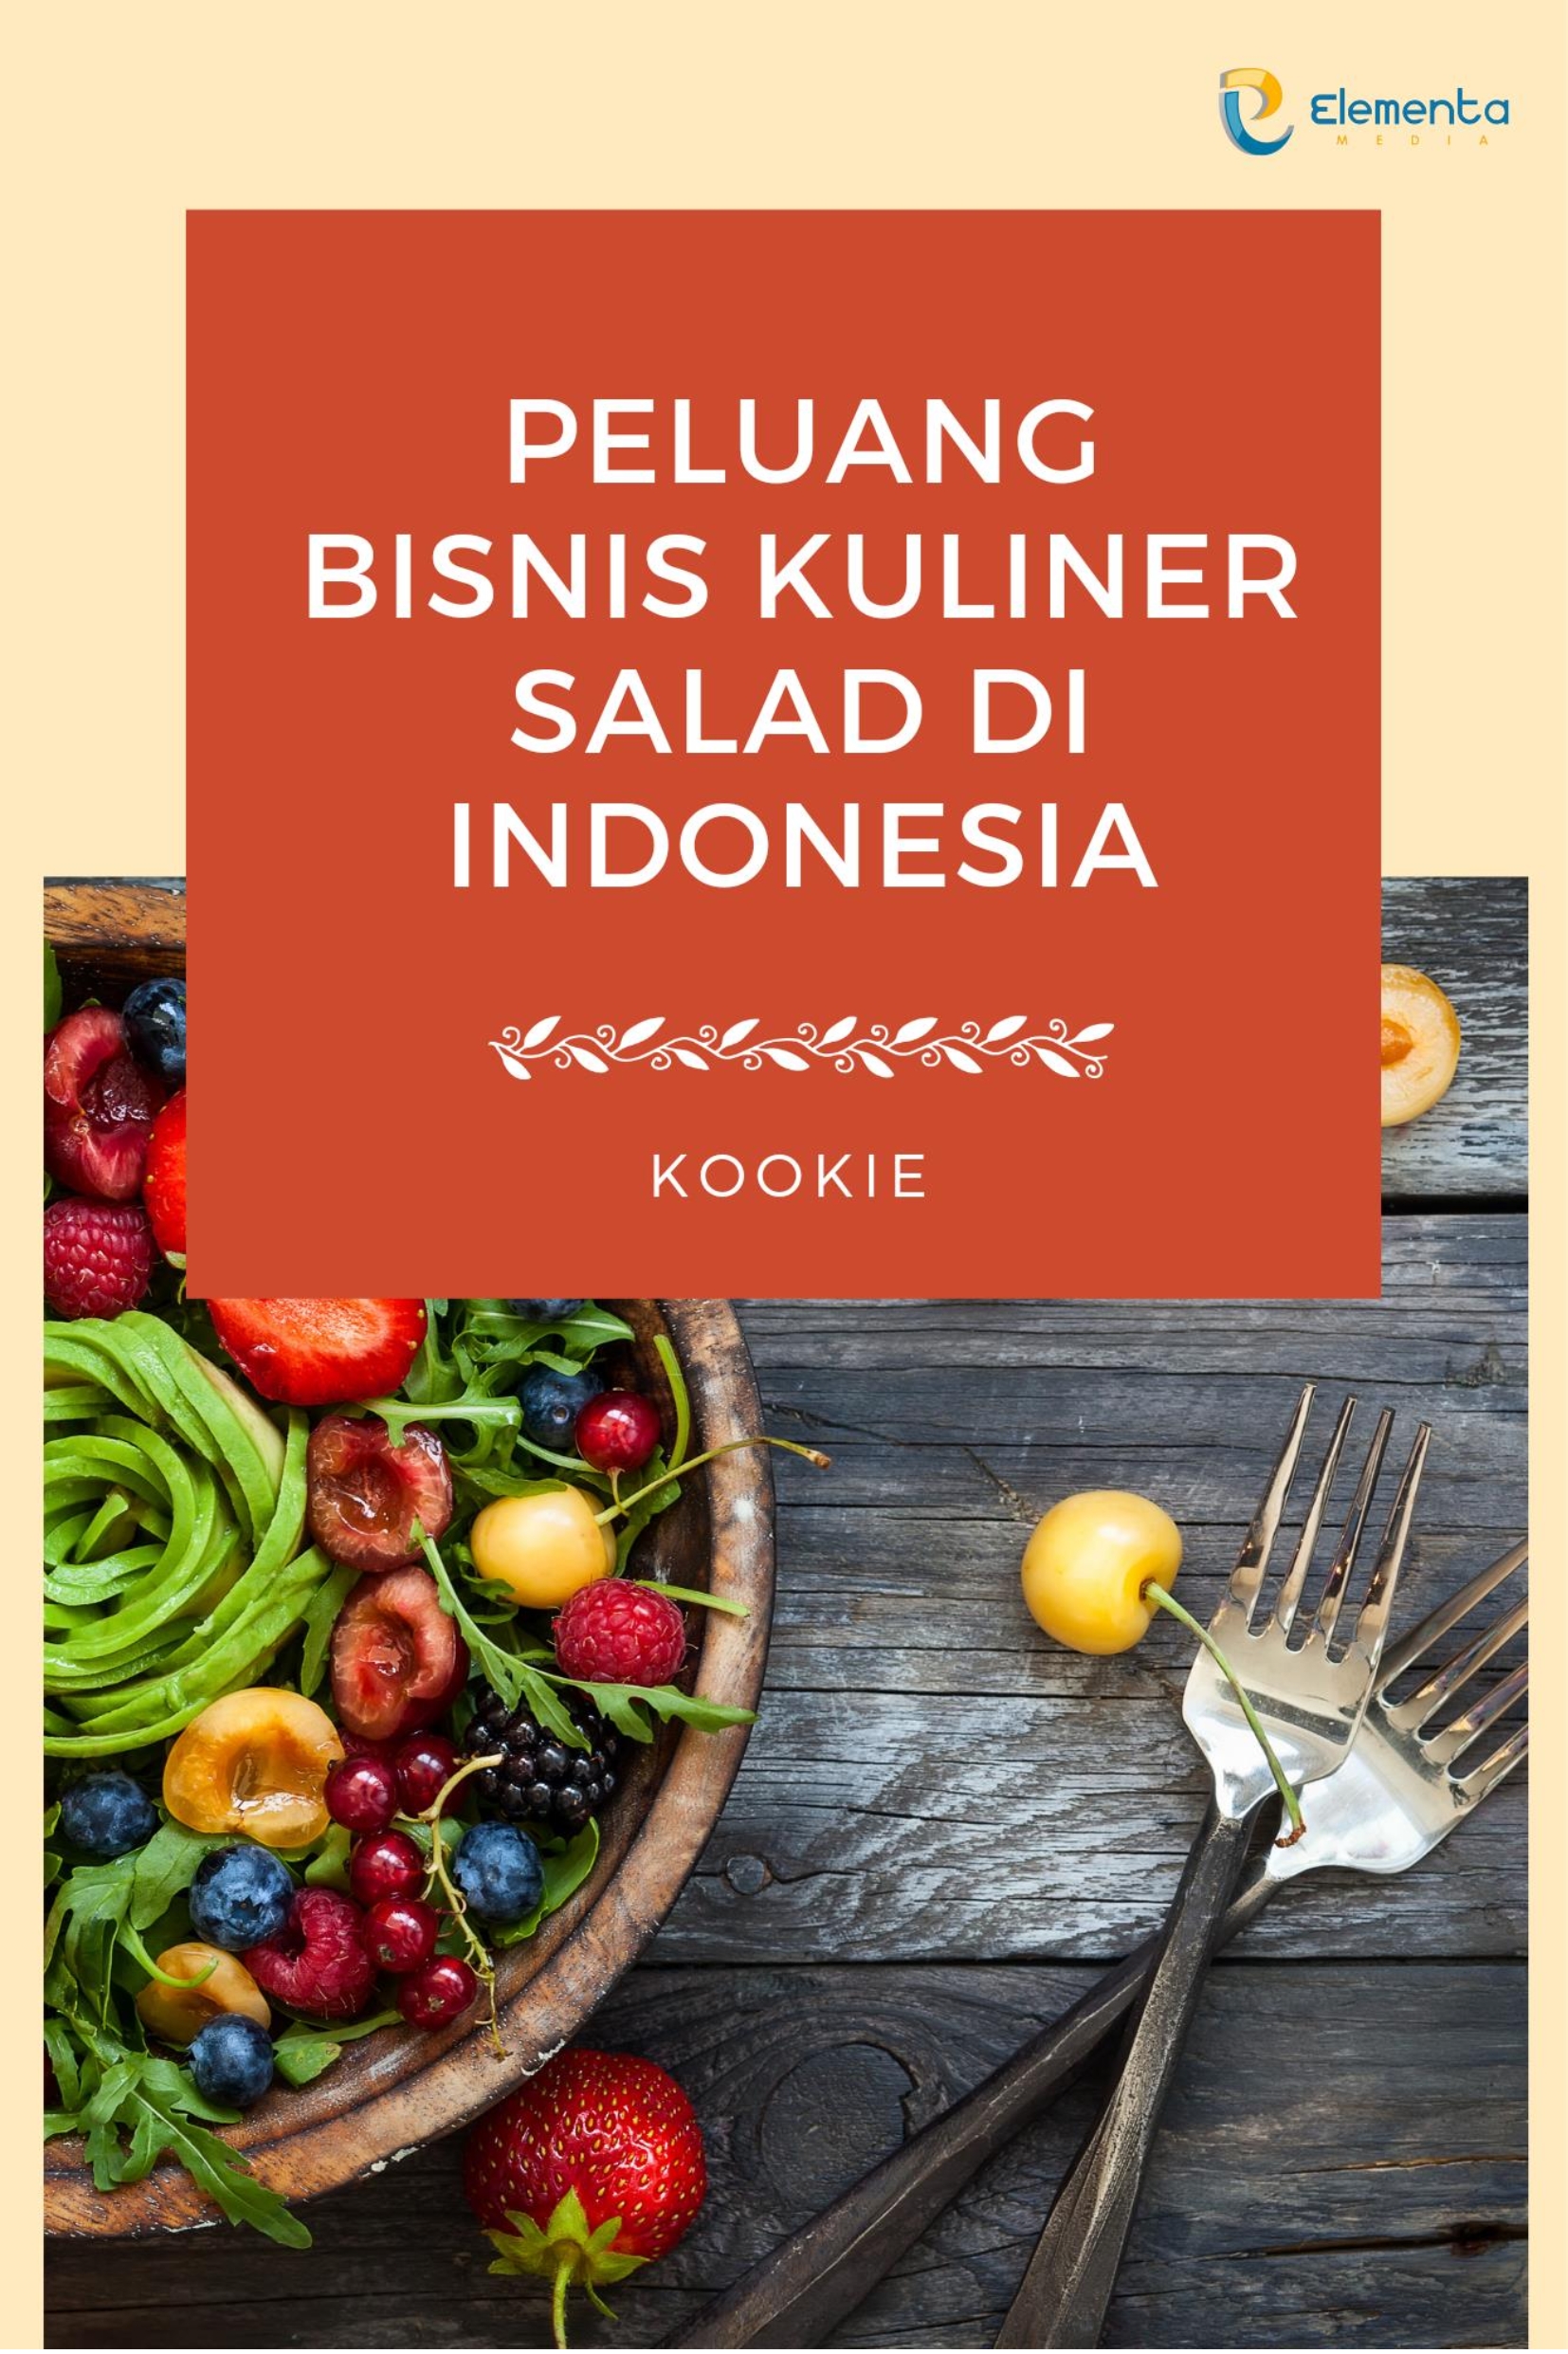 Peluang bisnis kuliner salad di Indonesia [sumber elektronis]